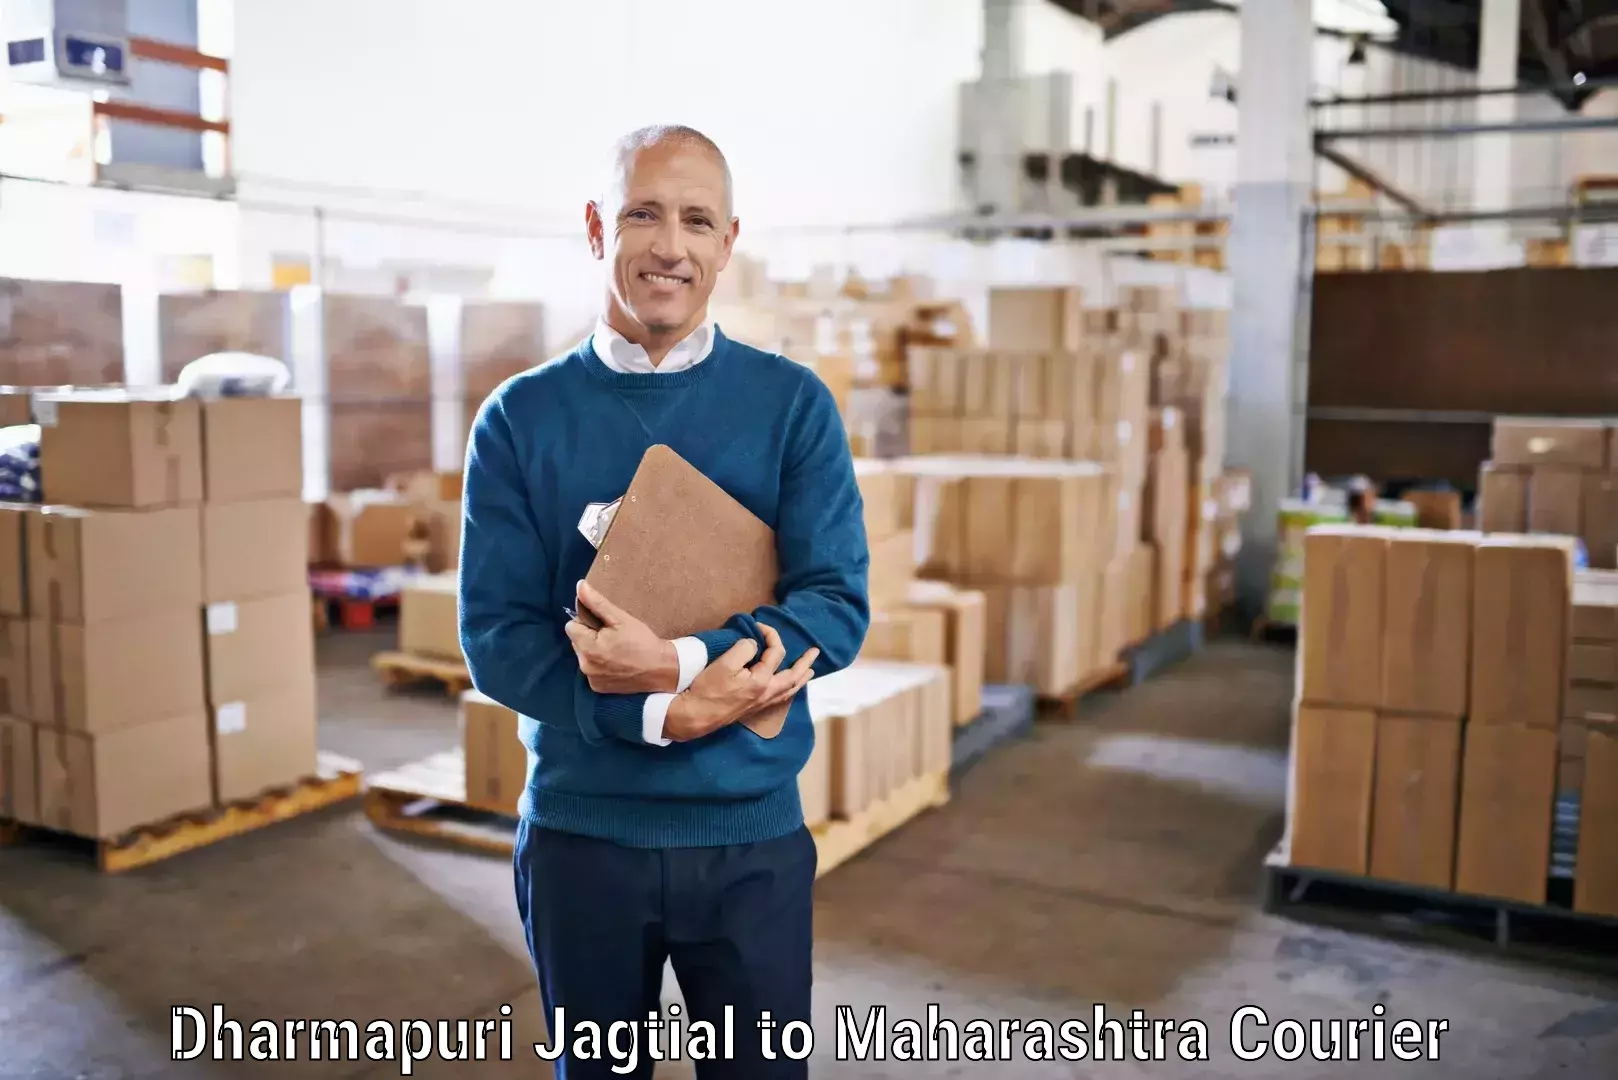 Bulk courier orders Dharmapuri Jagtial to Nagpur